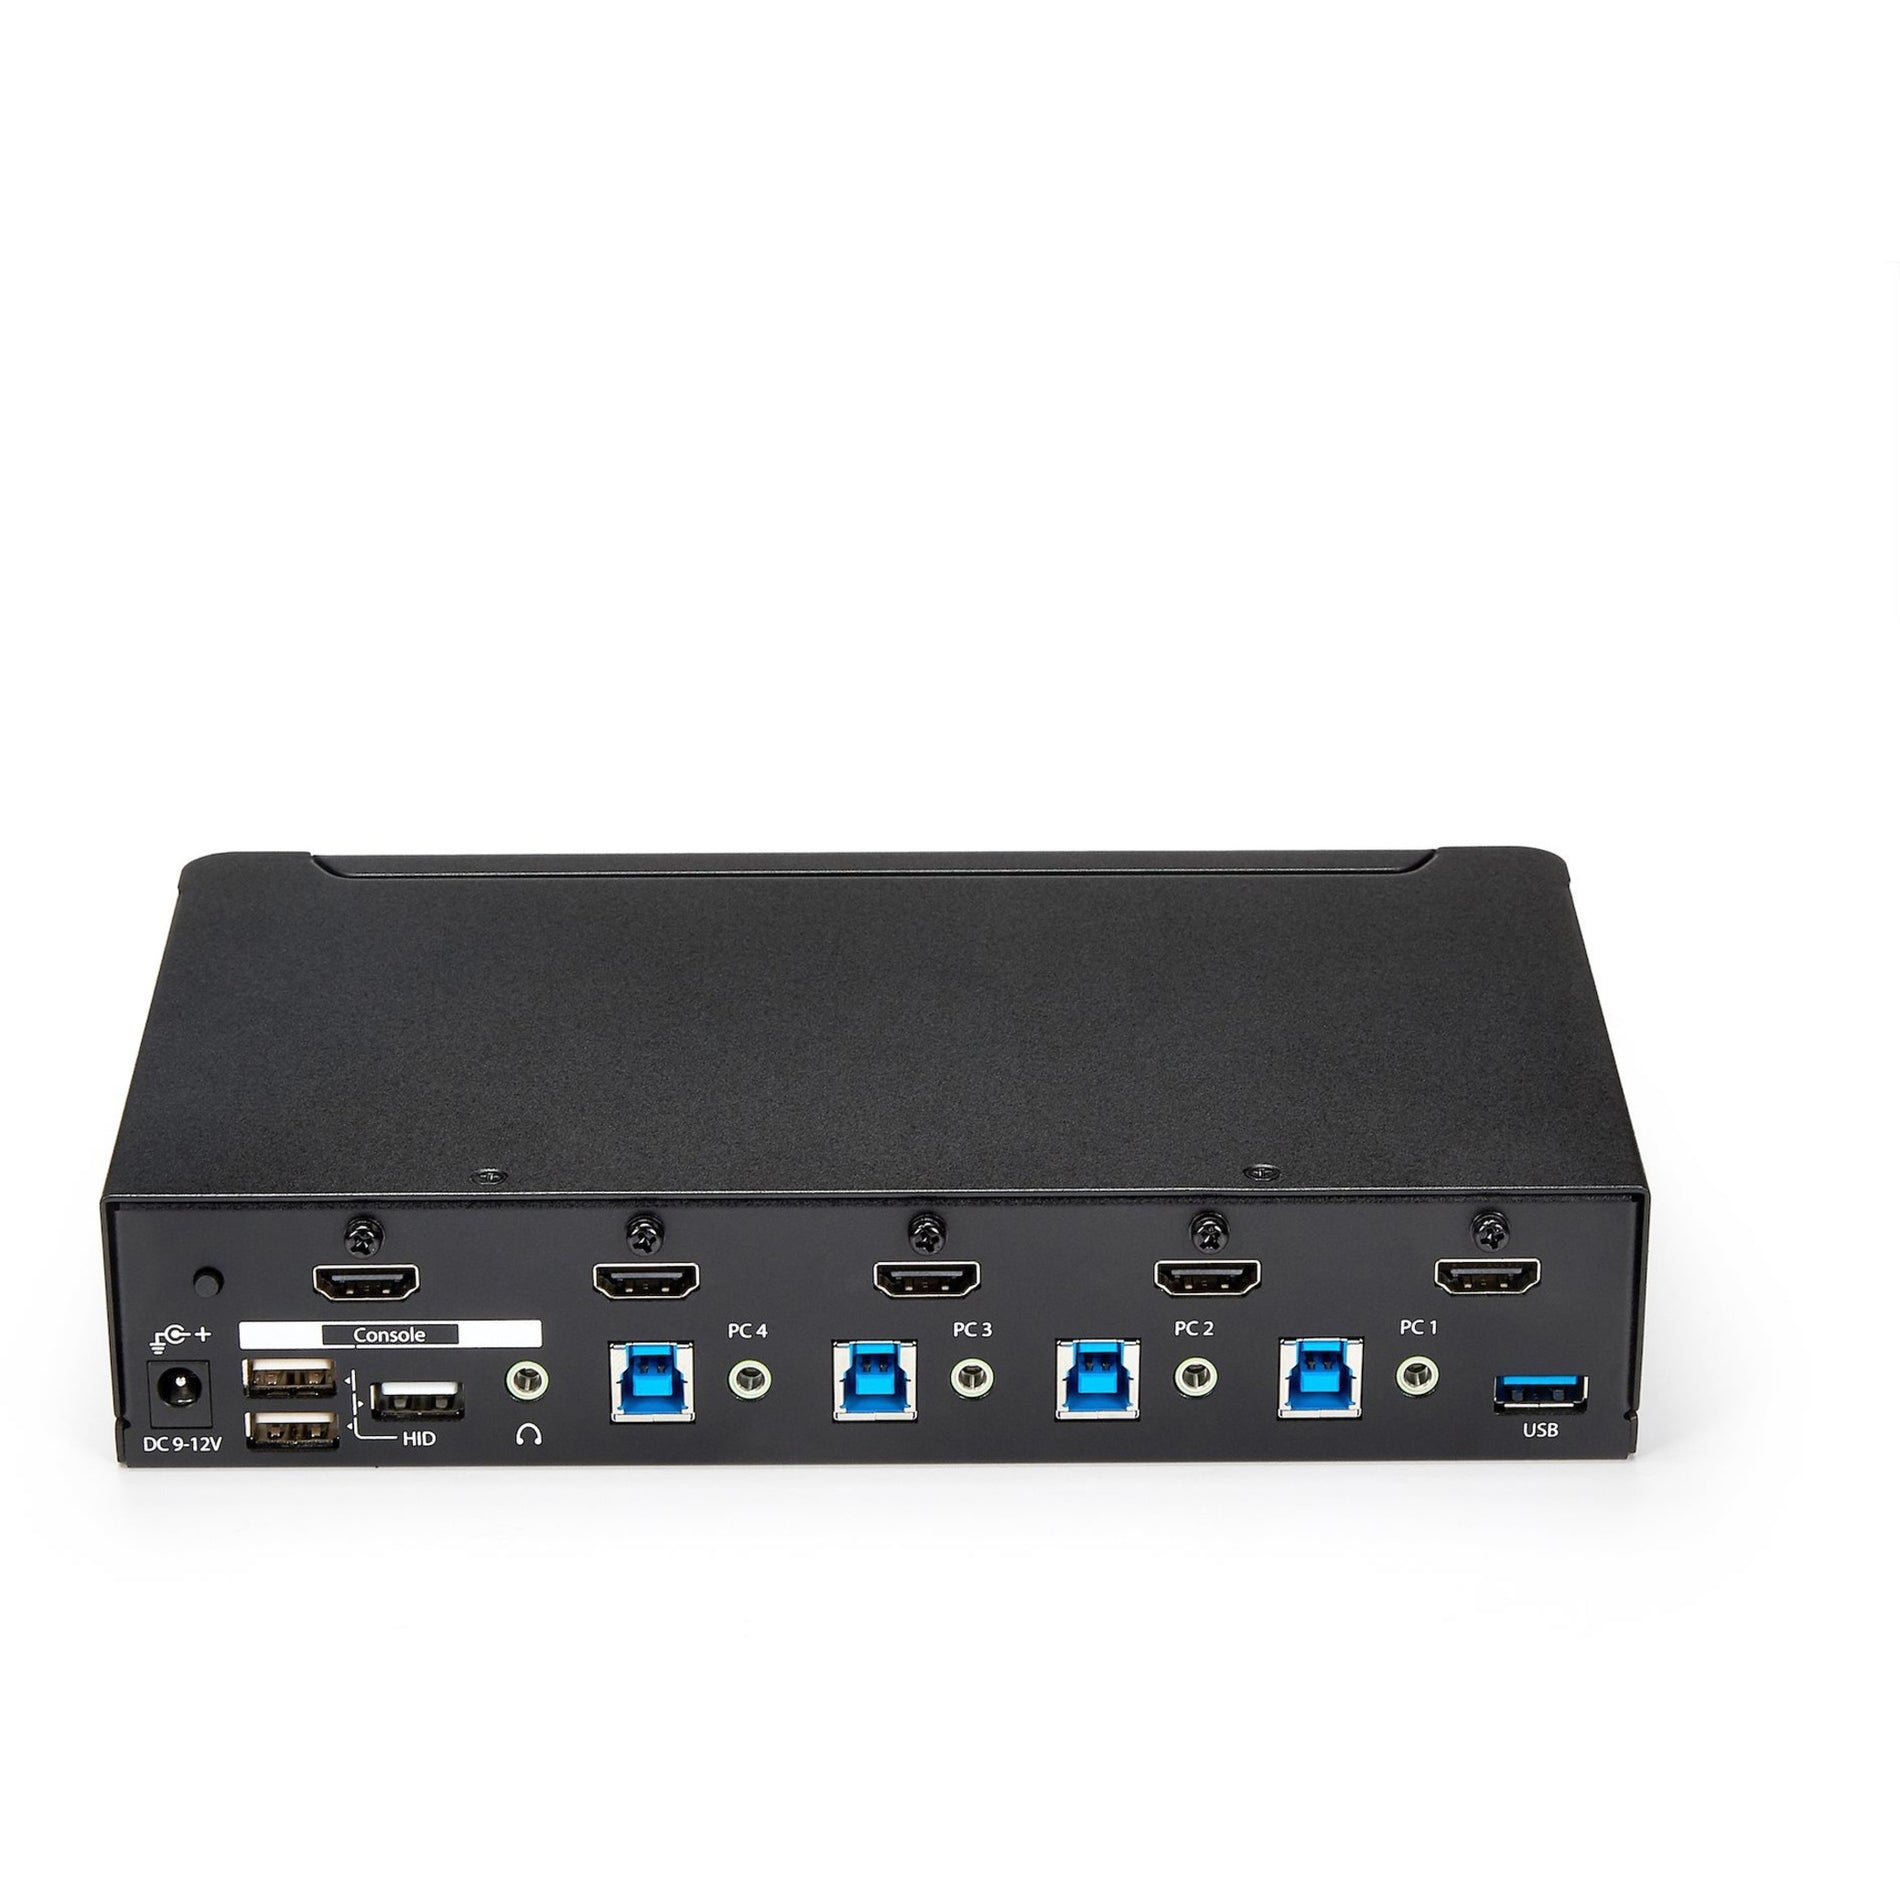 Marca: StarTech.com Switch KVM HDMI de 4 puertos - Hub USB 3.0 incorporado 1080p